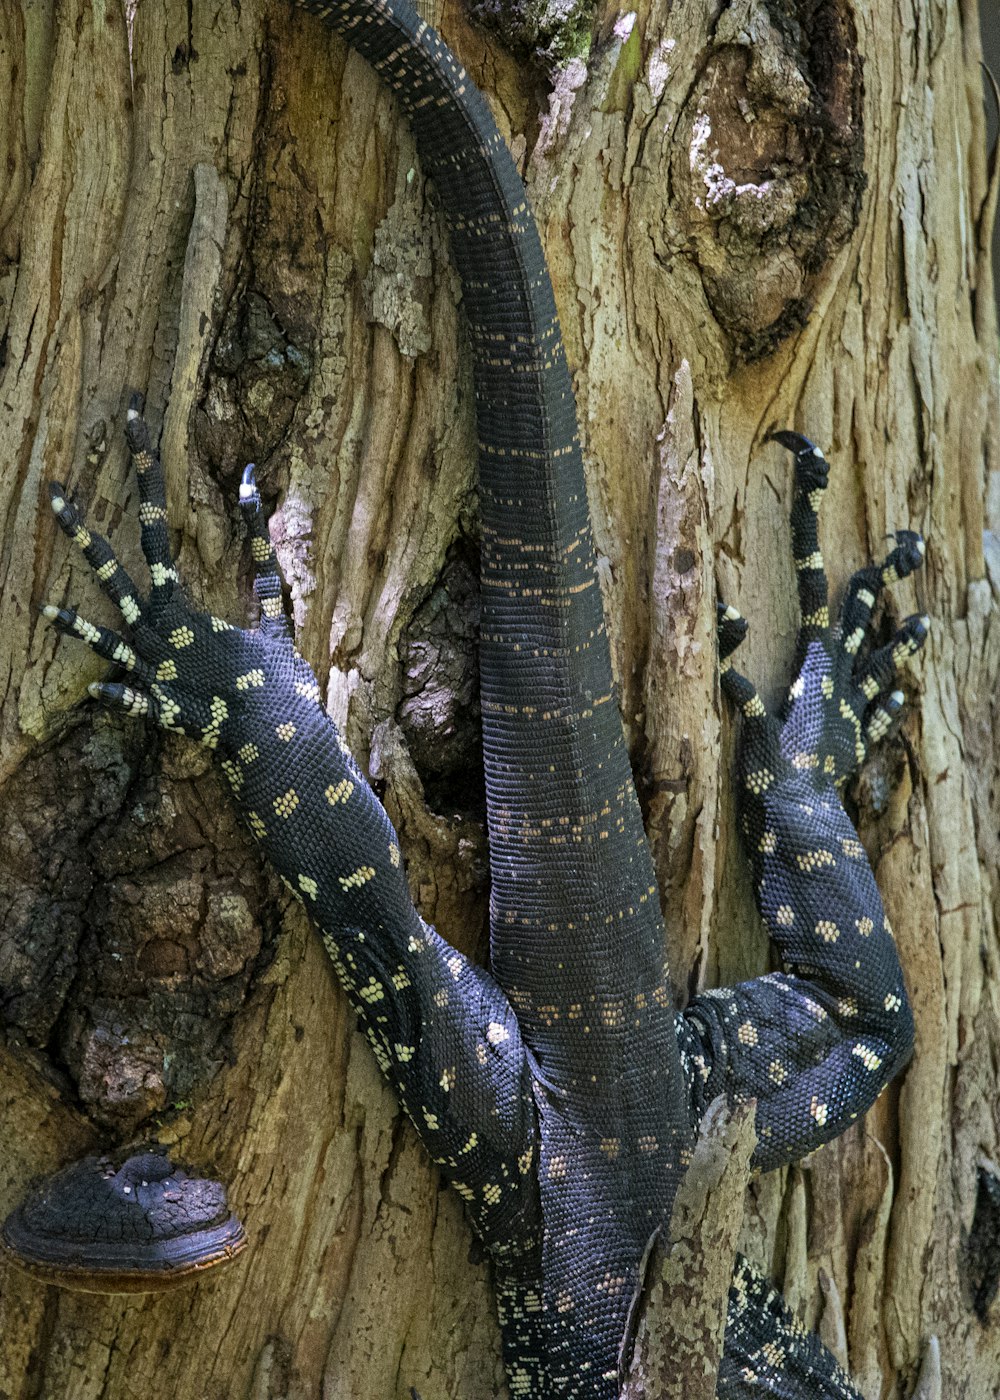 a snake slithering on a tree